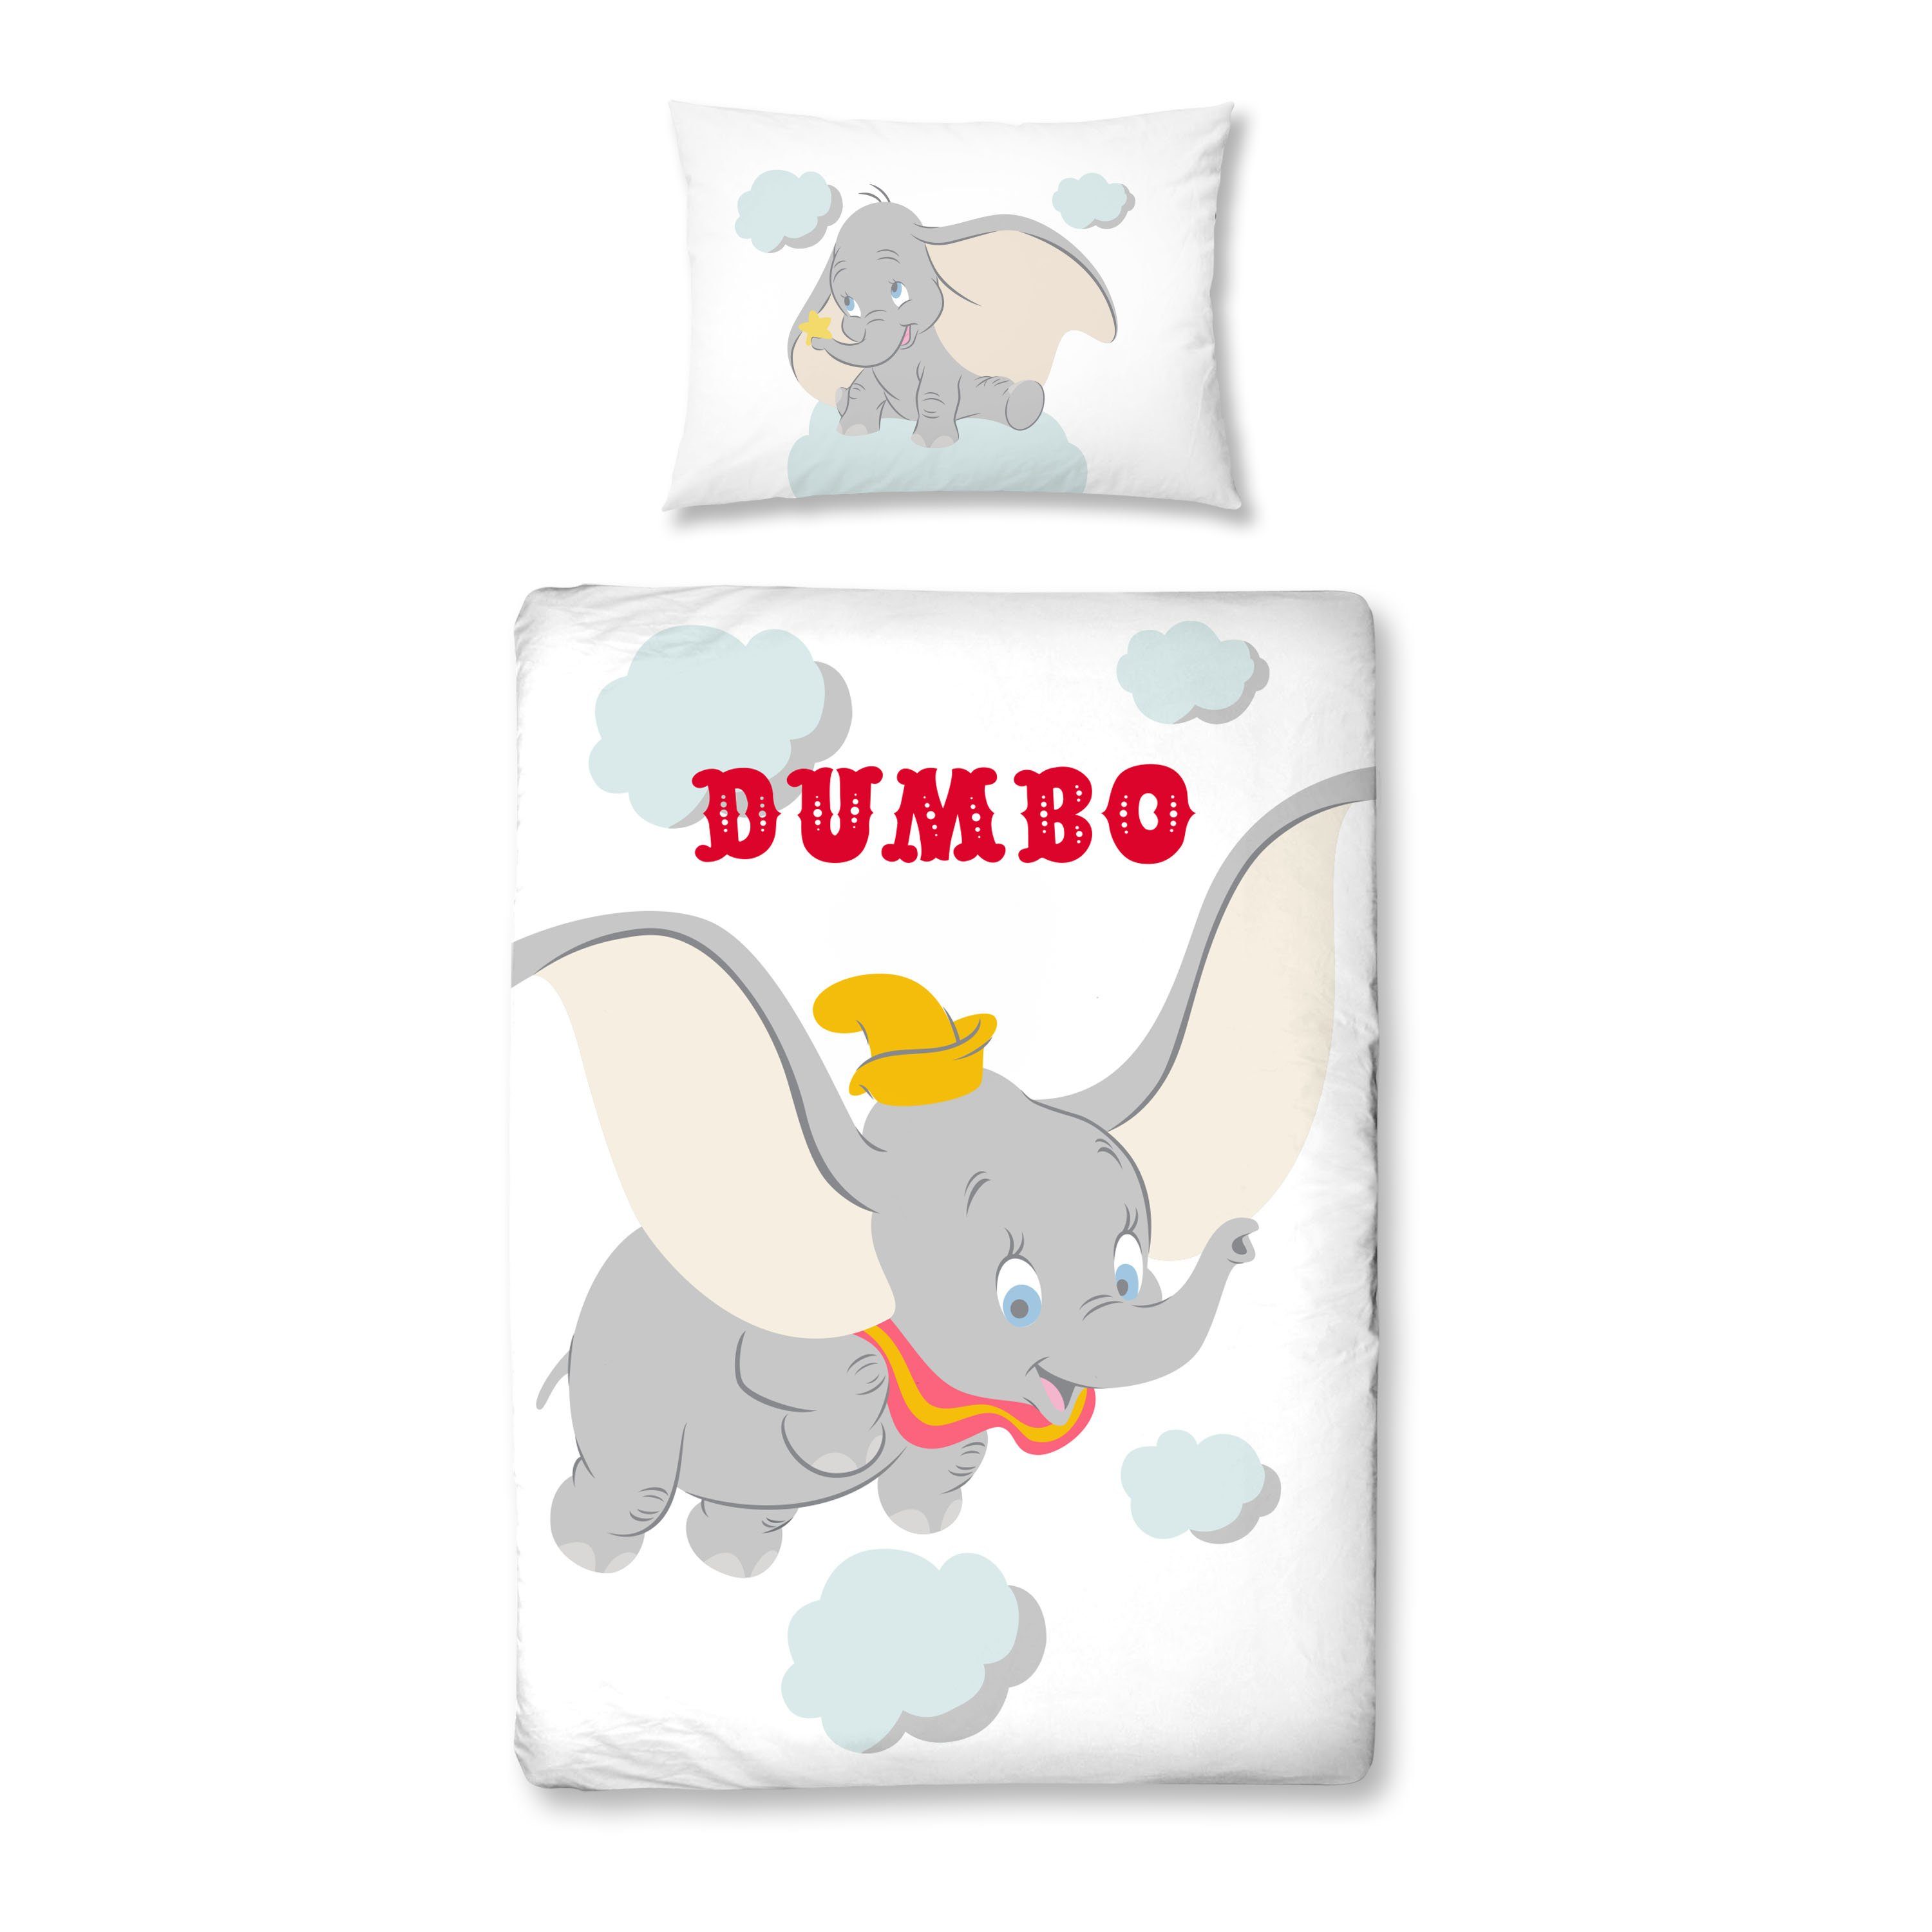 Babybettwäsche Dumbo 100x135 + 40x60 cm, 100 % Baumwolle, MTOnlinehandel, Renforcé, 2 teilig, Disney's Dumbo Elefant Kinderbettwäsche